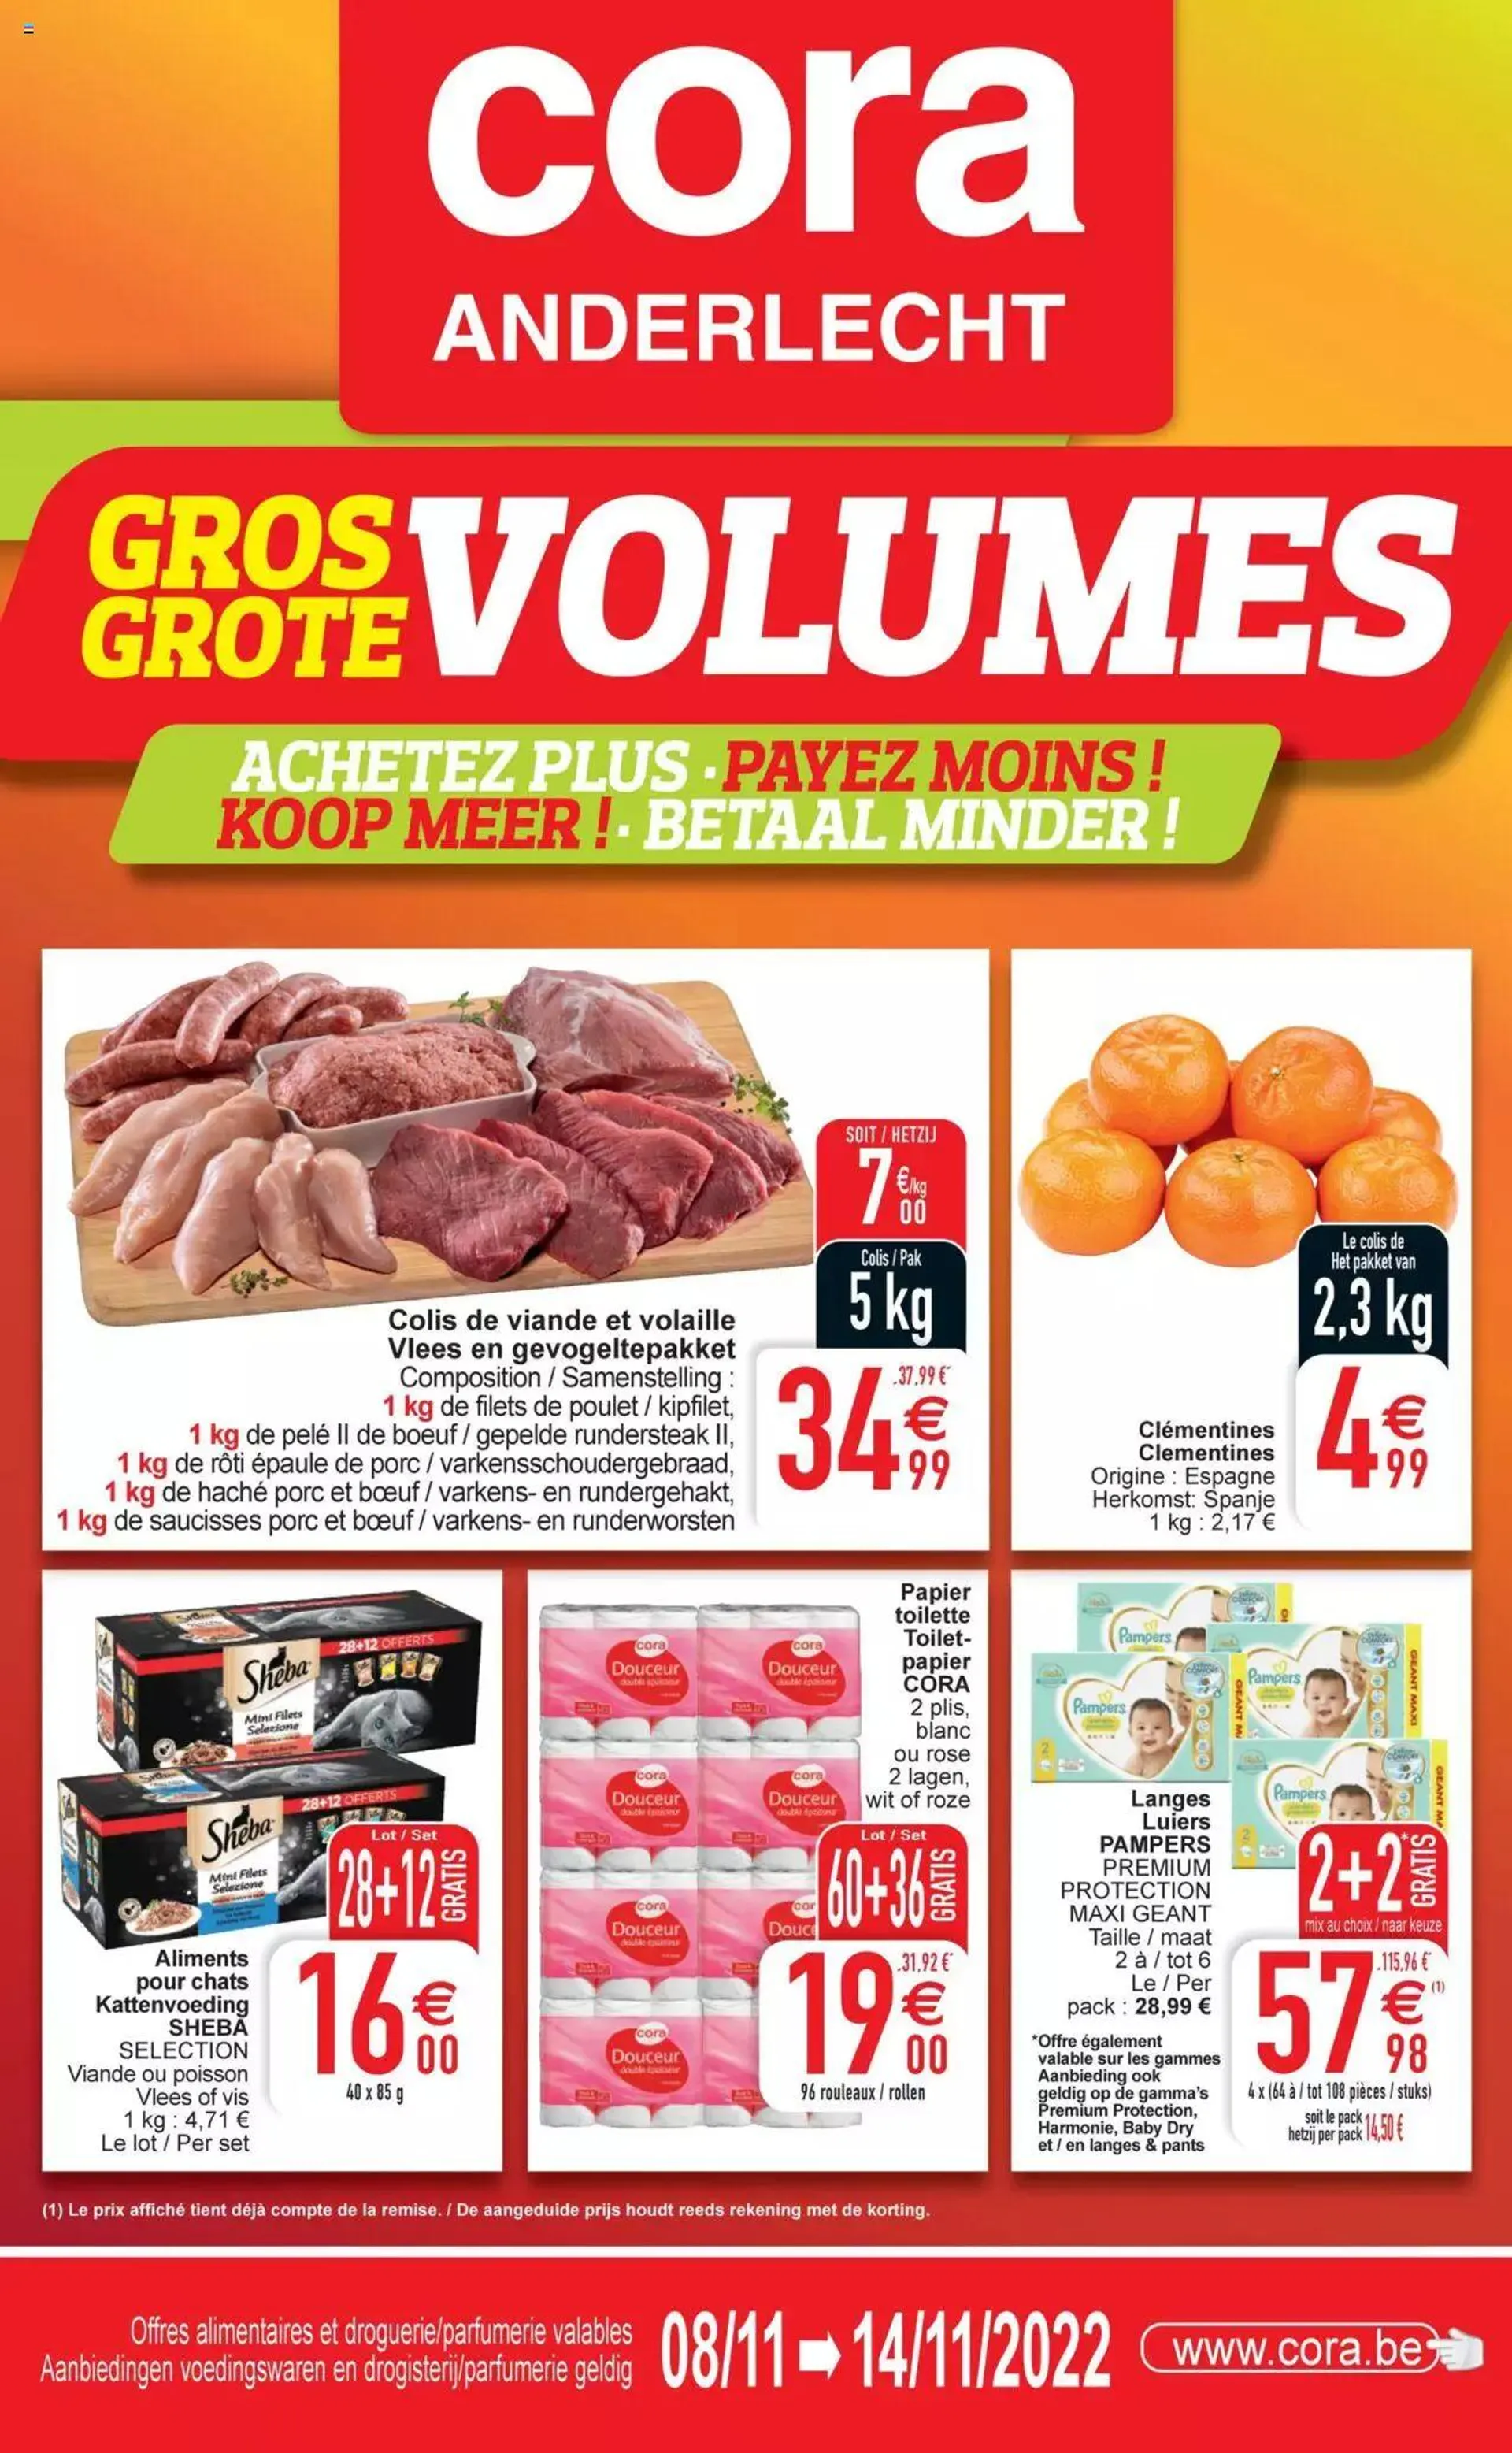 Cora - Anderlecht - Gros volumes chez / Grote volumes bij cora - 0